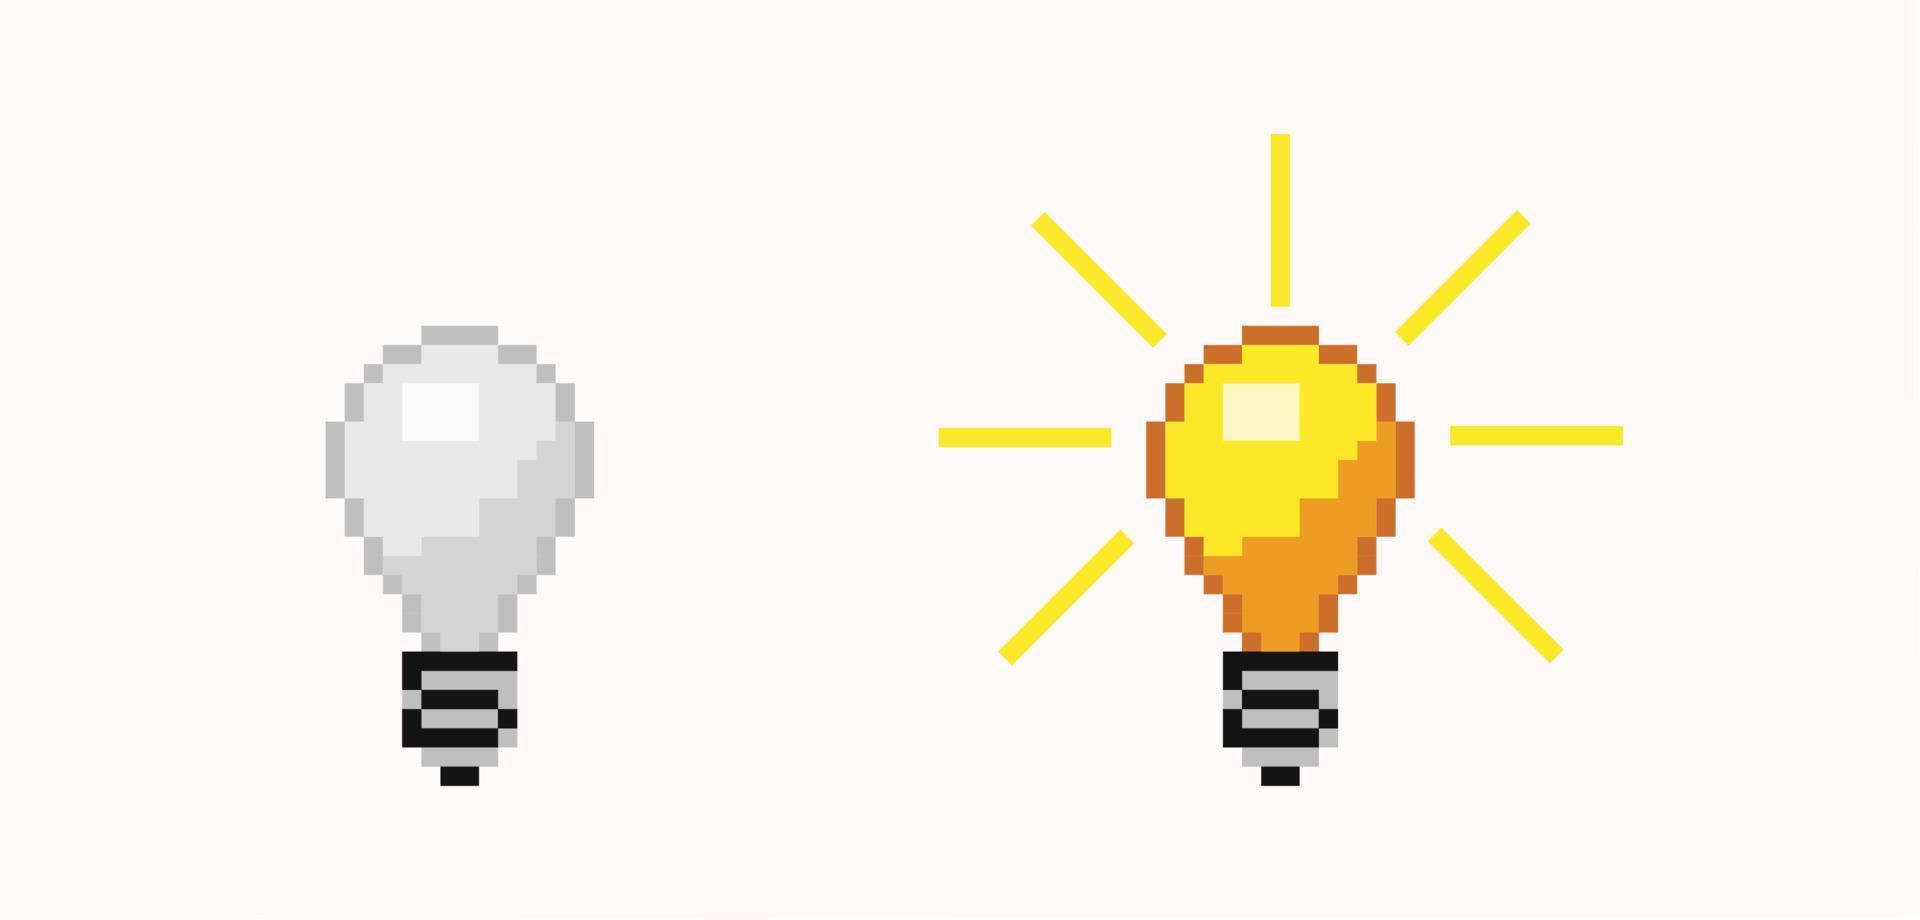 draaide zich om uit en Aan pixel lamp. lichtgevend oranje en wit energie vrij licht lamp helder flitste creatief idee spel ontwerp van een gloeiend lamp inspiratie met vector licht.